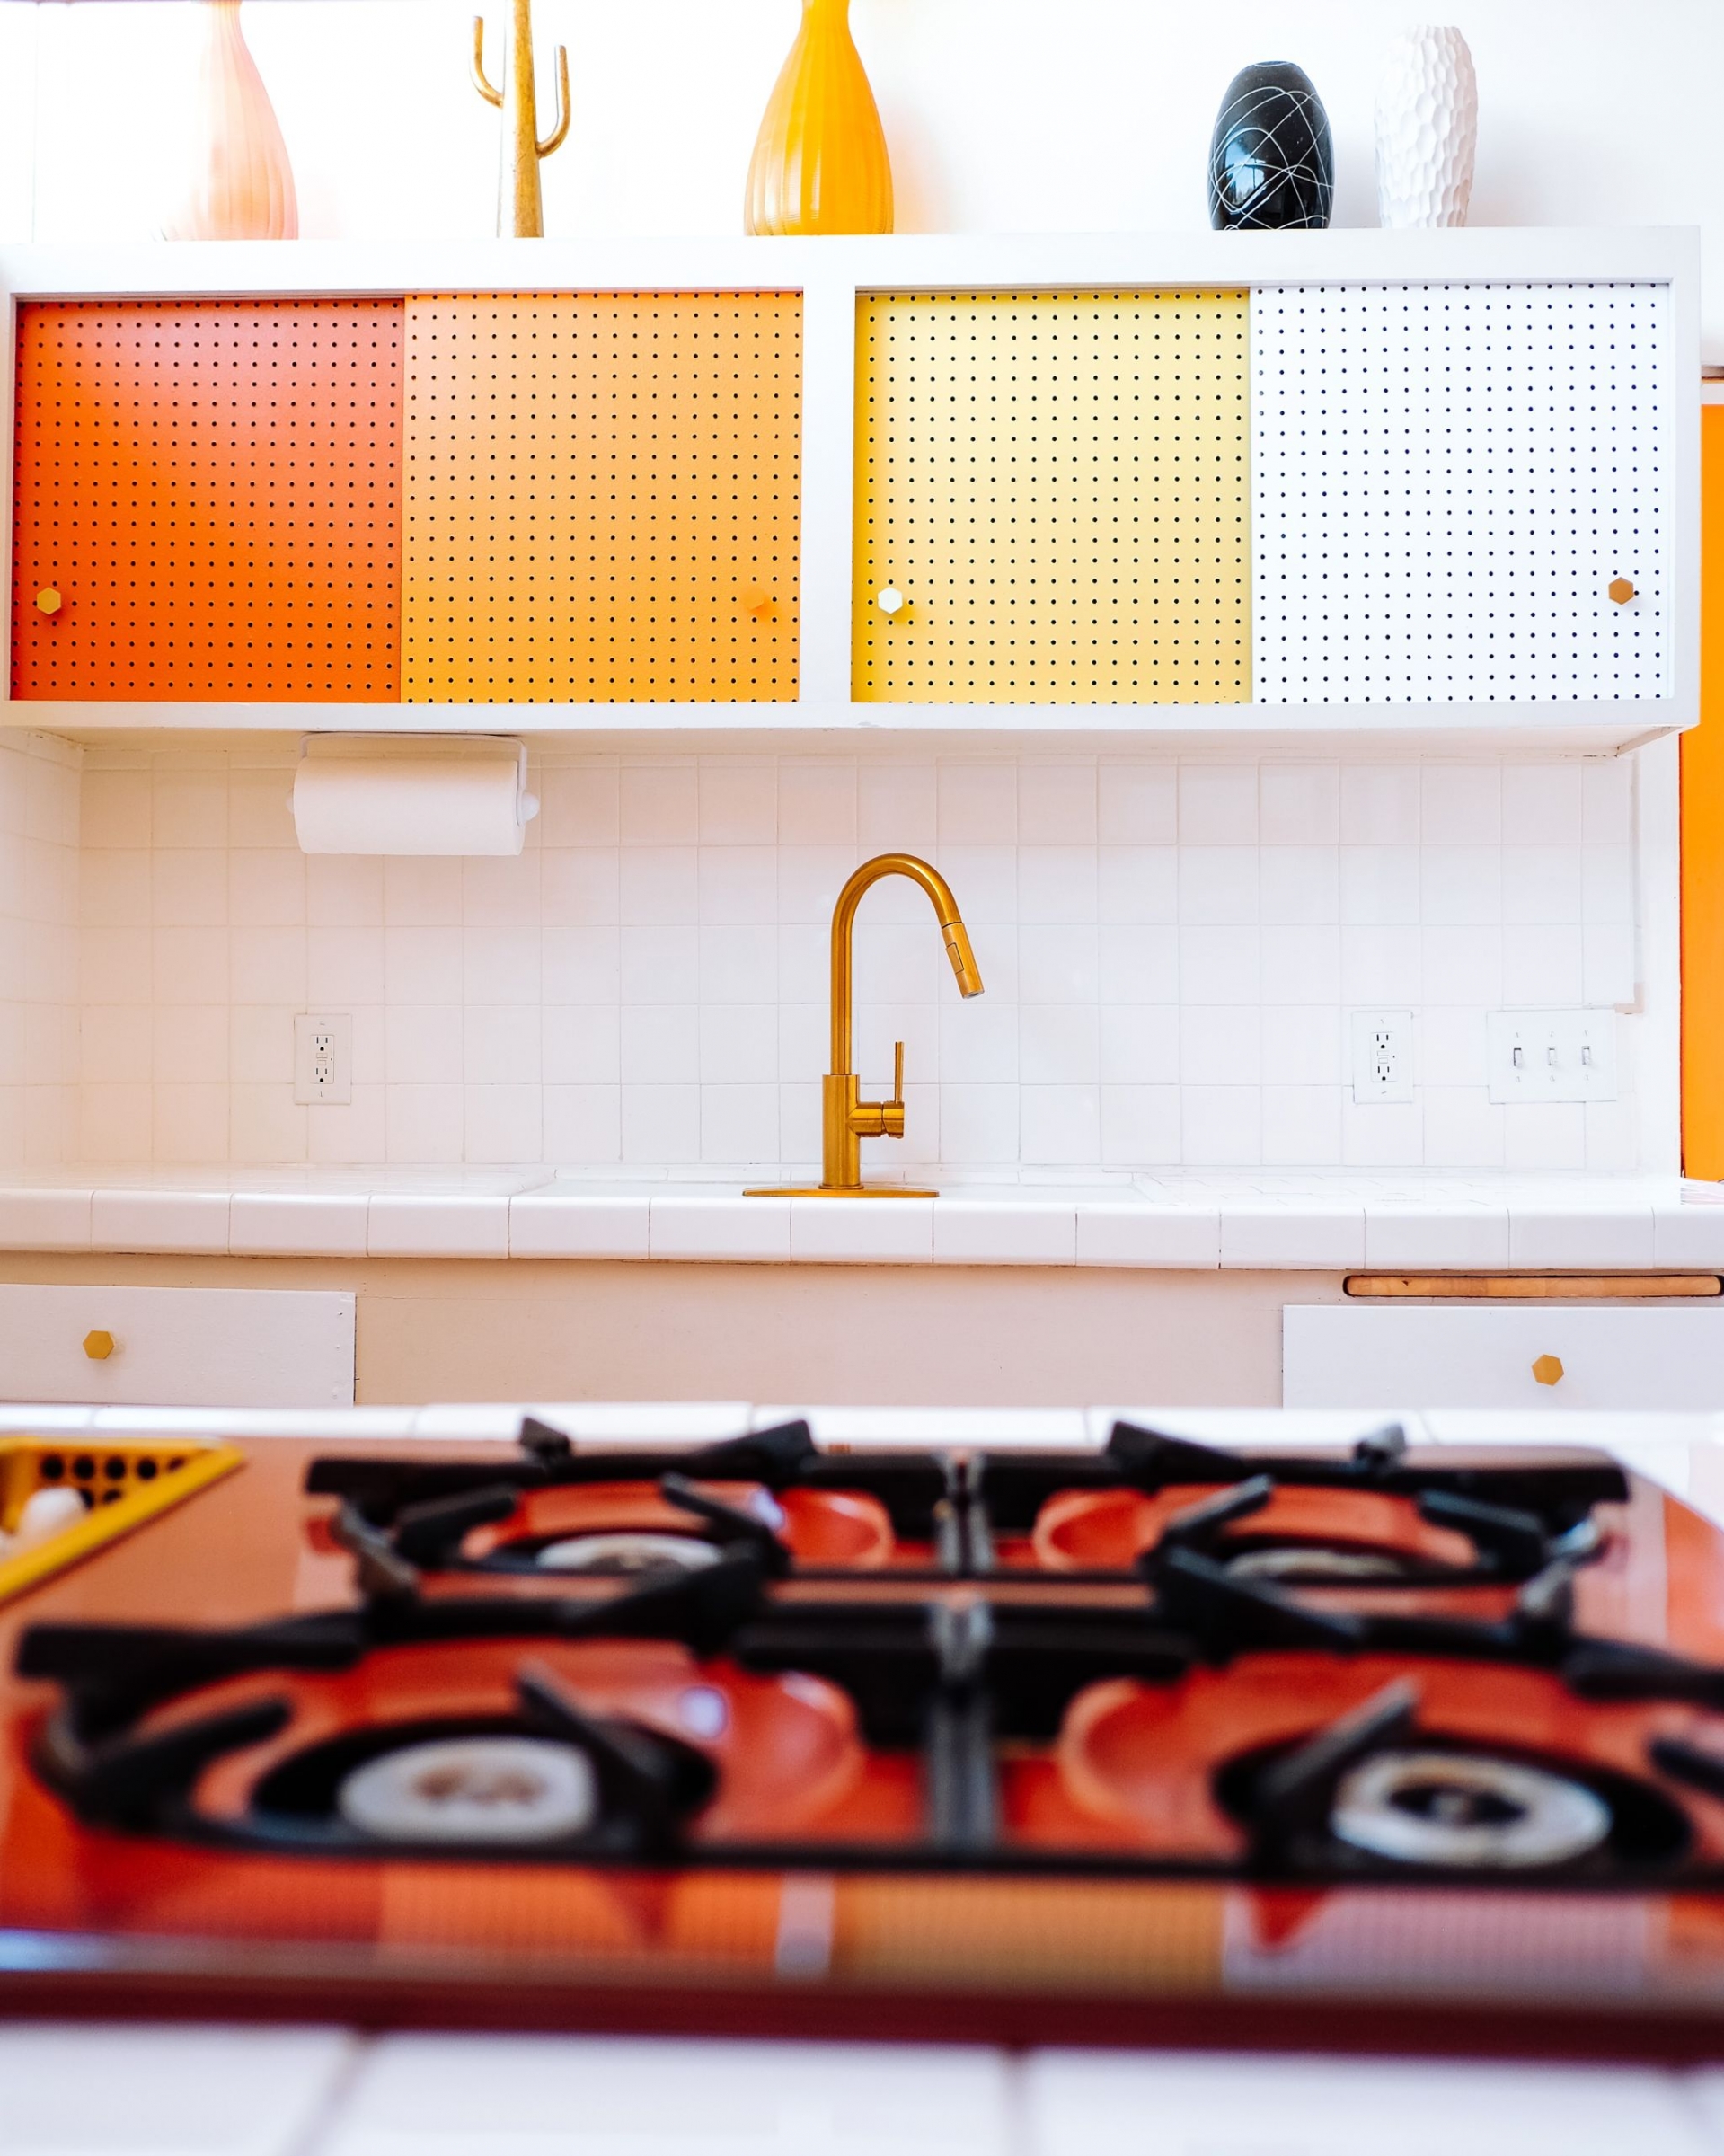 Bạn có thể dành thời gian sơn lại tủ bếp trên để không gian nấu nướng nổi bật hơn mà không cần sắm thêm phụ kiện trang trí. 